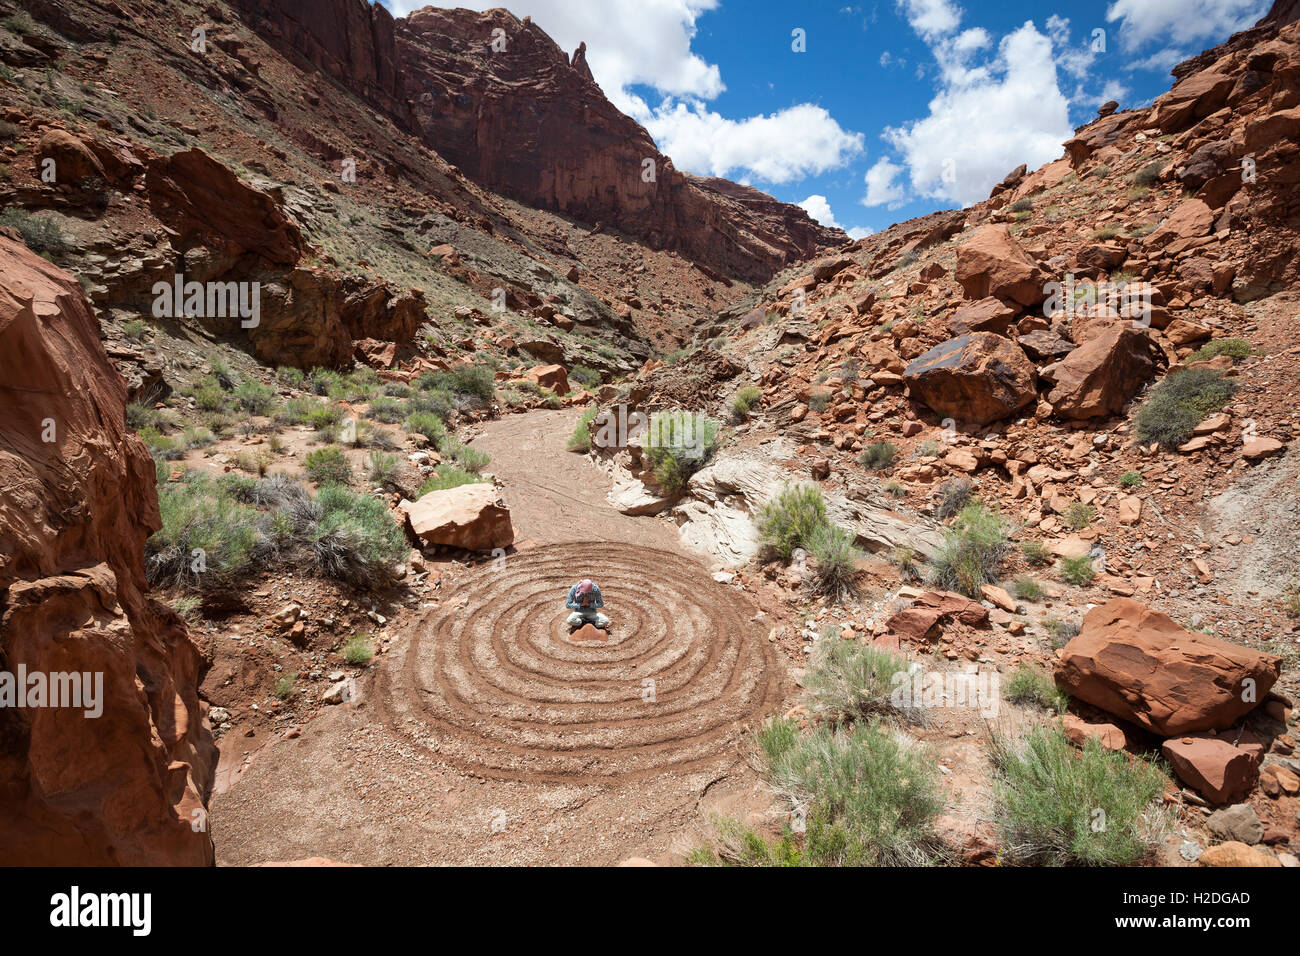 Ein Mann, meditieren oder beten das Zentrum des Spiral-Design in der Wüste Stockfoto